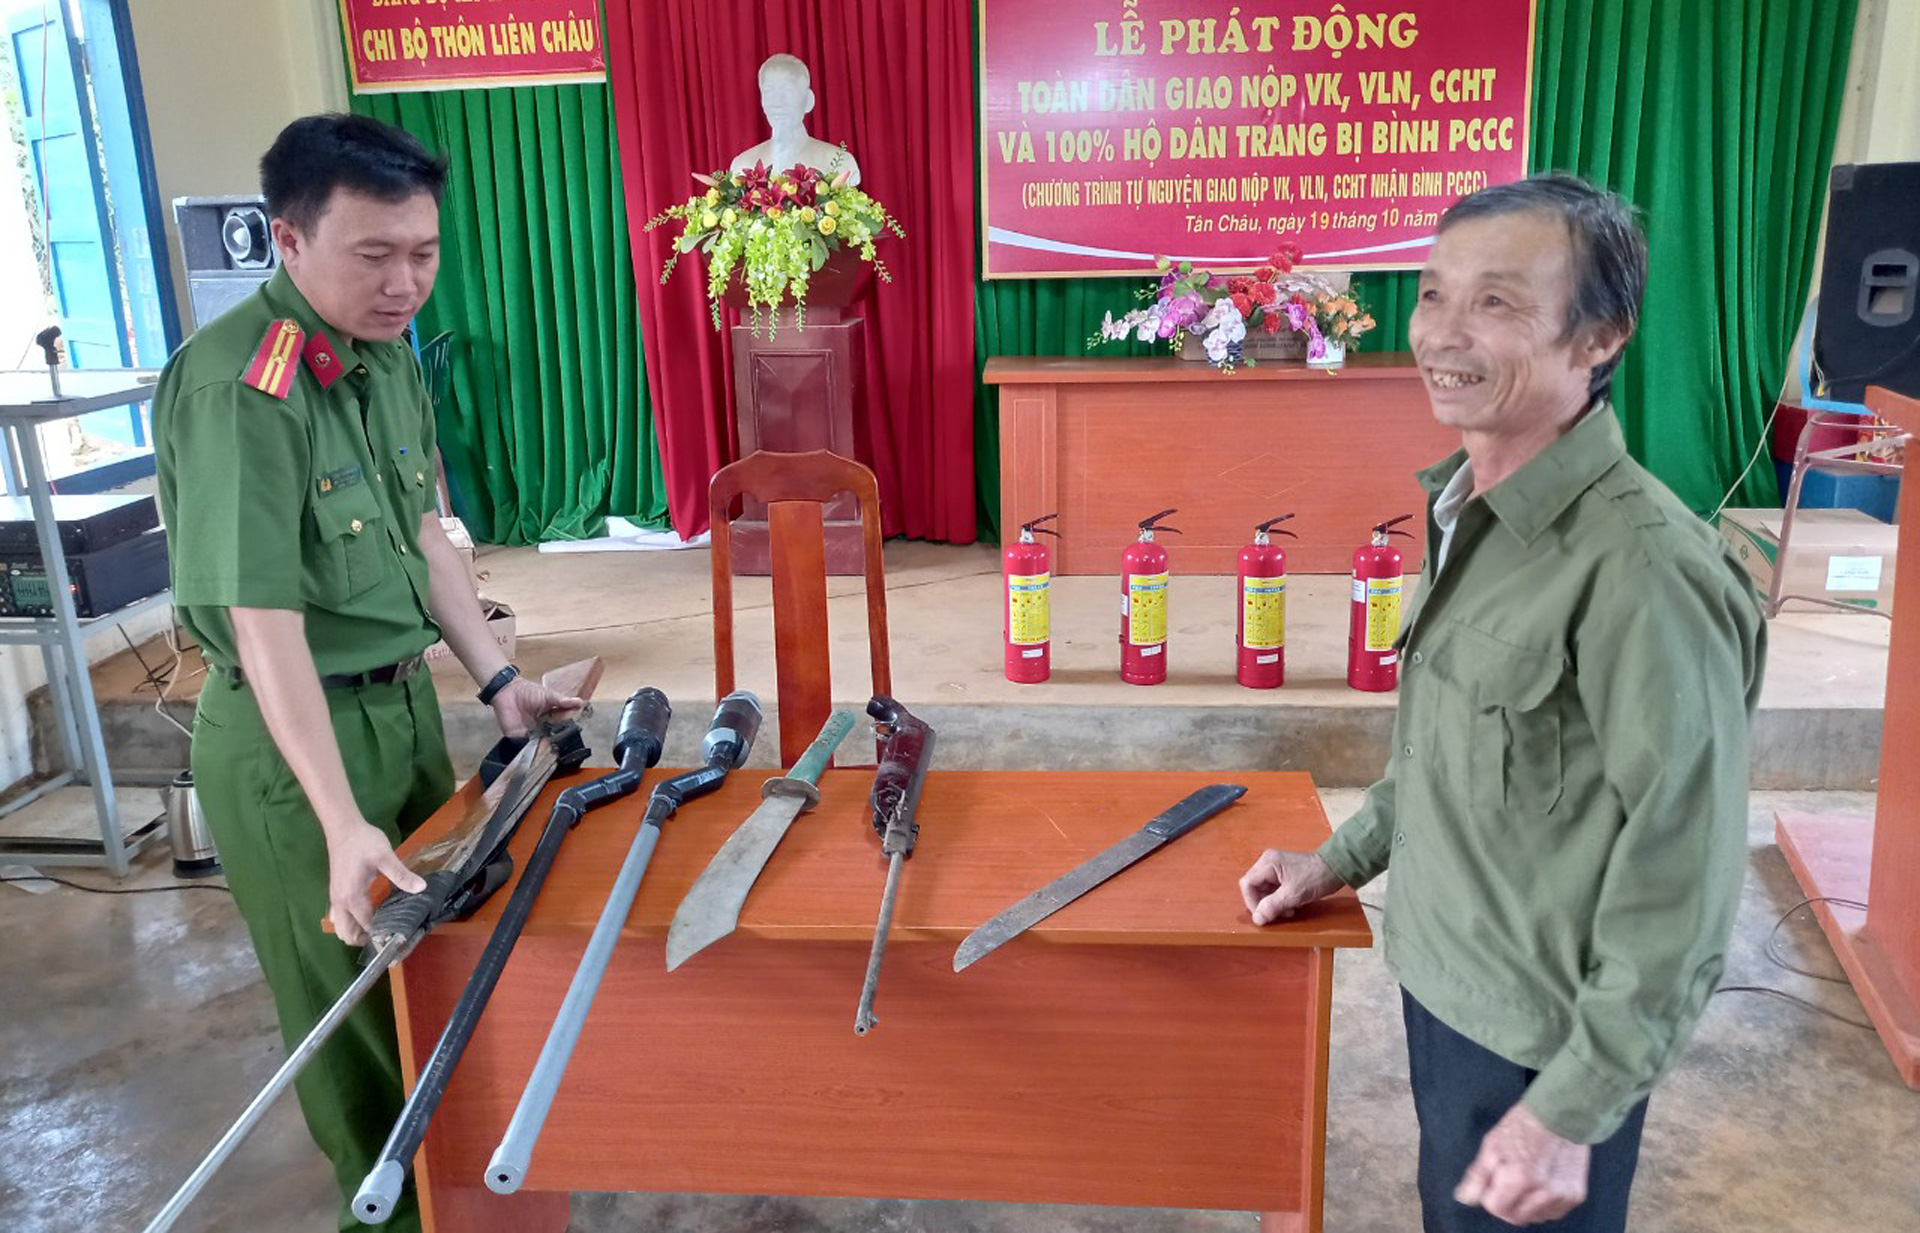 Người dân xã Tân Châu tự nguyện giao nộp vũ khí, vật liệu nổ, công cụ hỗ trợ cho Công an xã